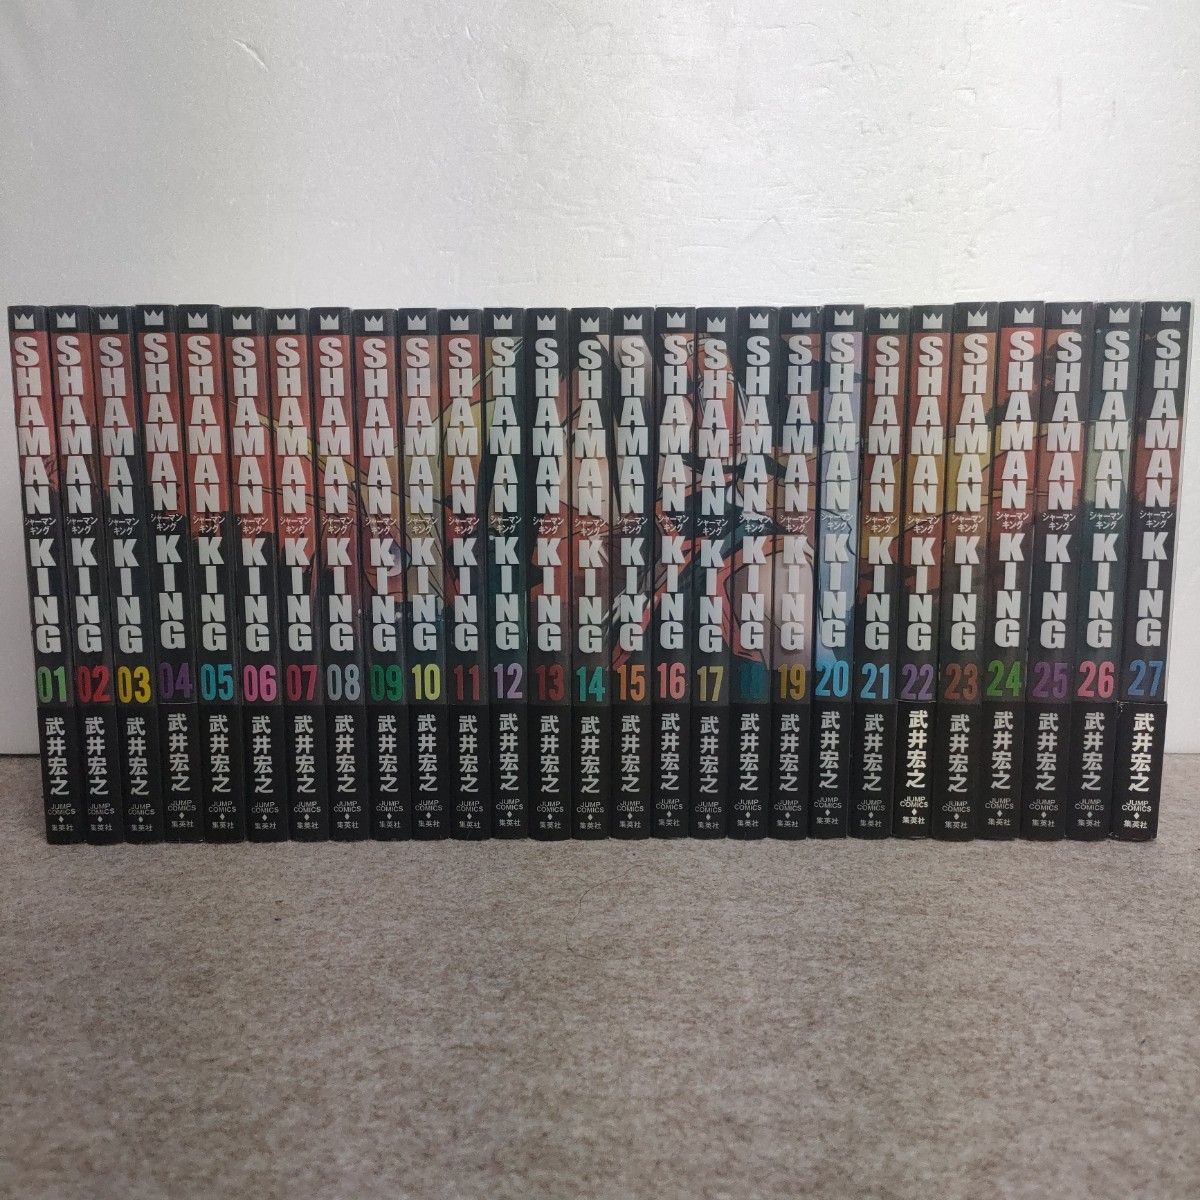 シャーマンキング完全版全27巻セット 全巻セット 漫画 本・音楽・ゲーム 海外並行輸入正規品